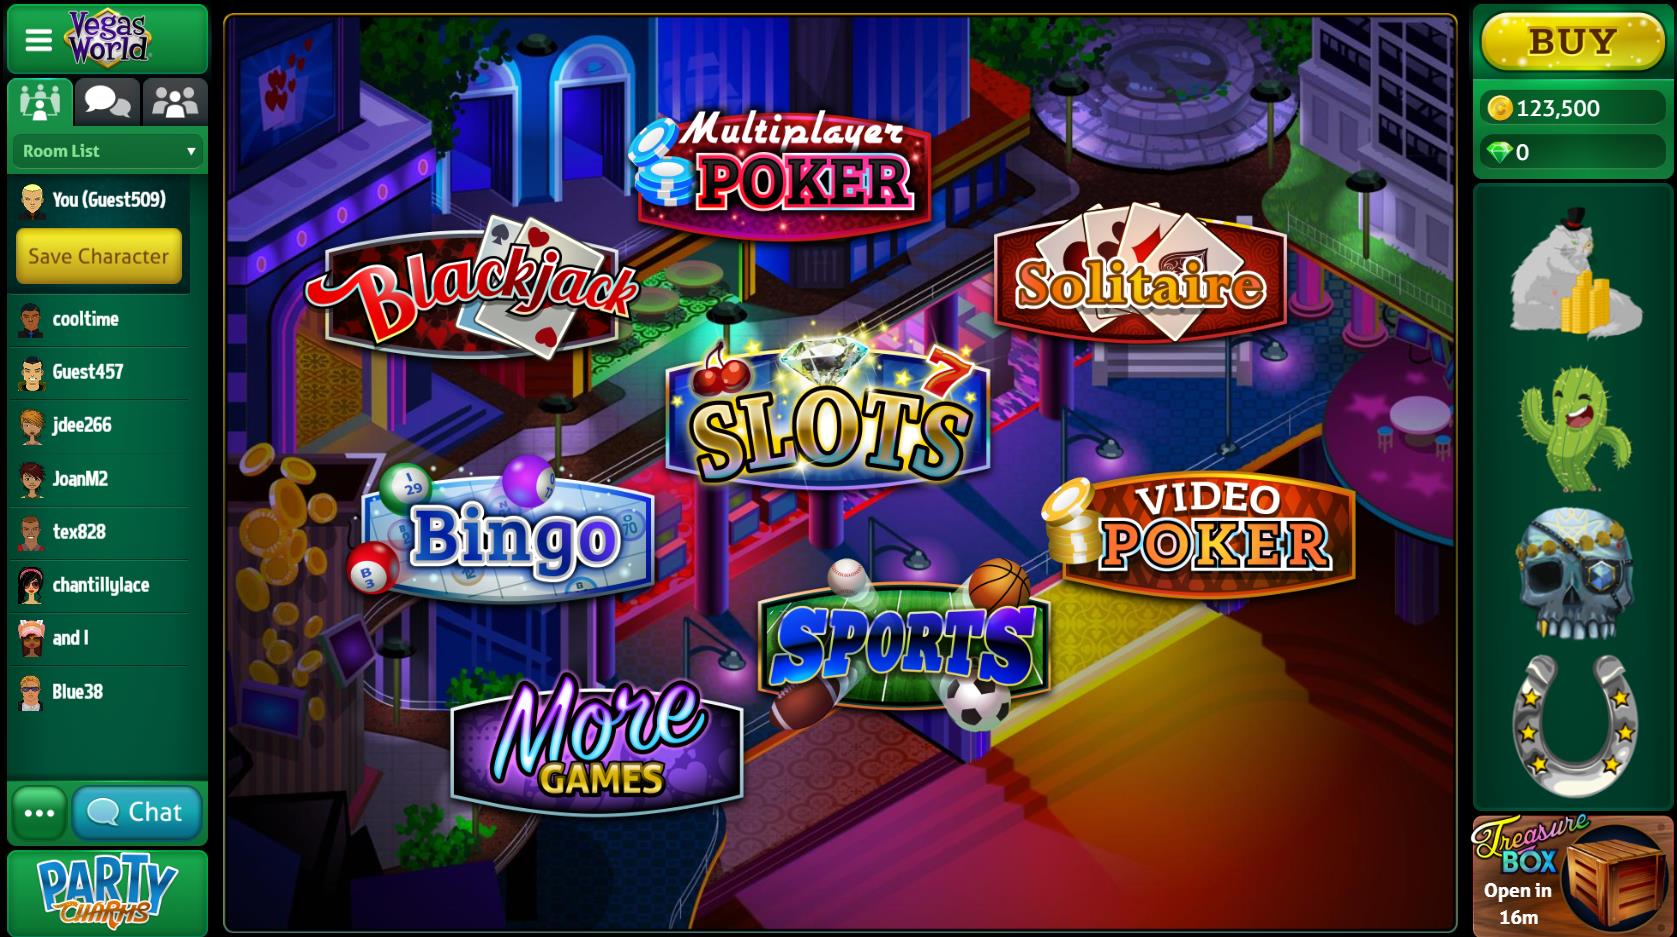 Best Casino No Deposit Bonus 2020